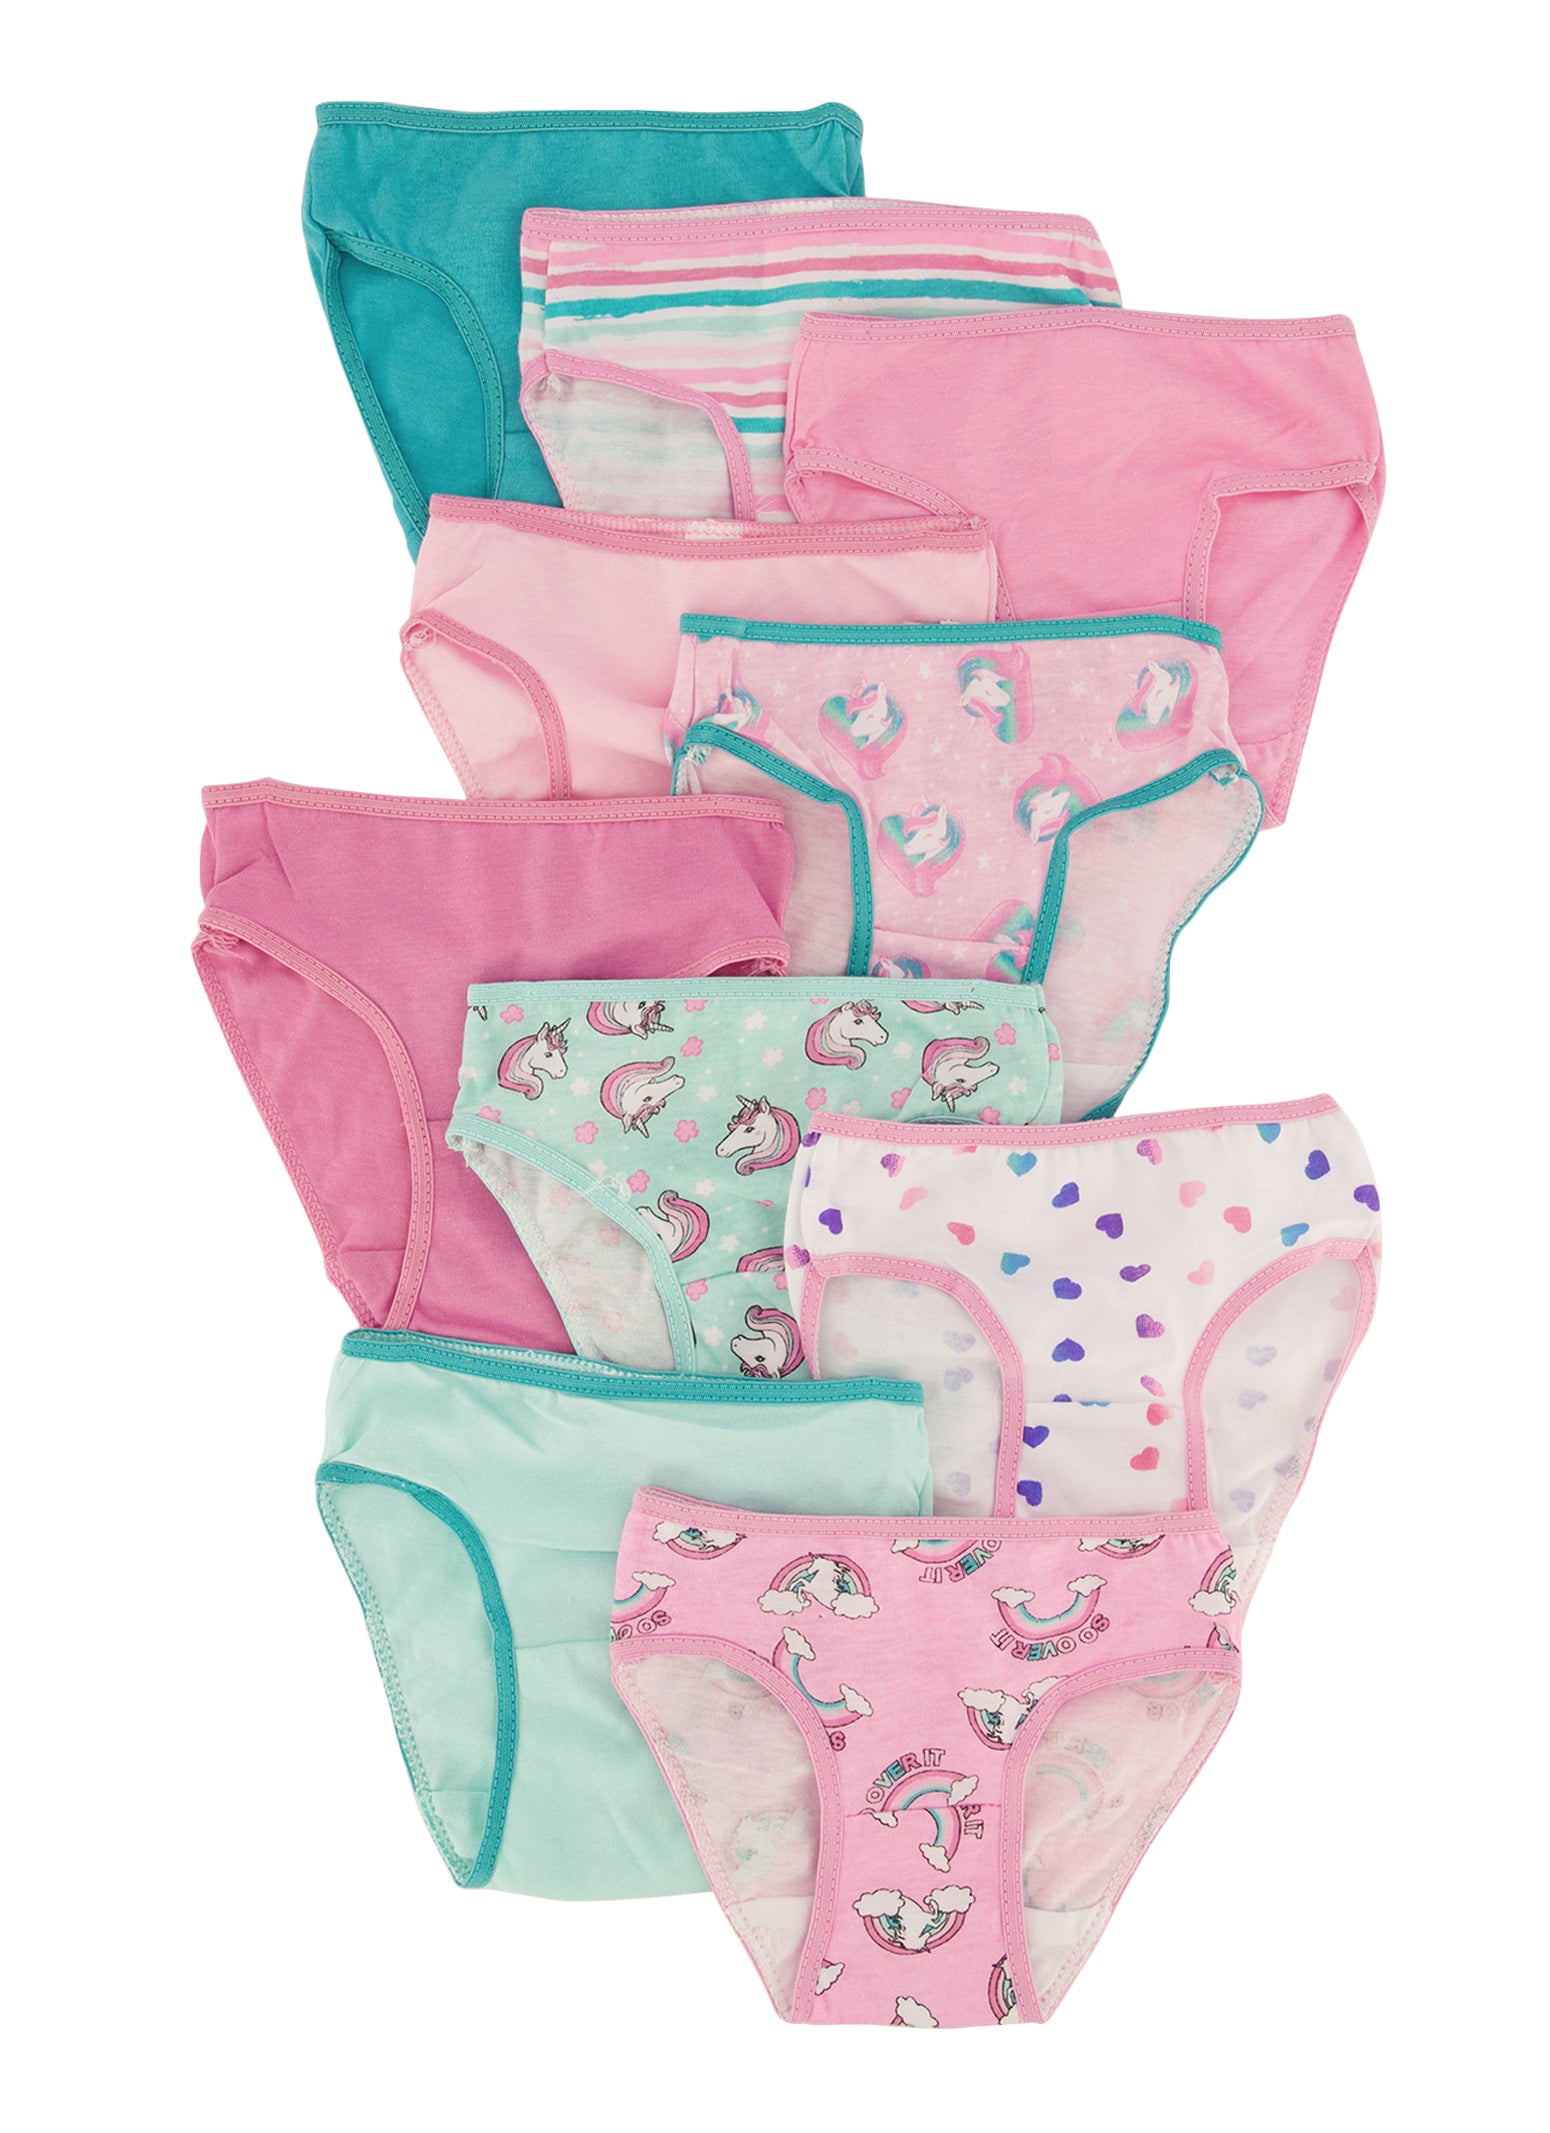 Toddler Girls 10 Pack Unicorn Print Panties